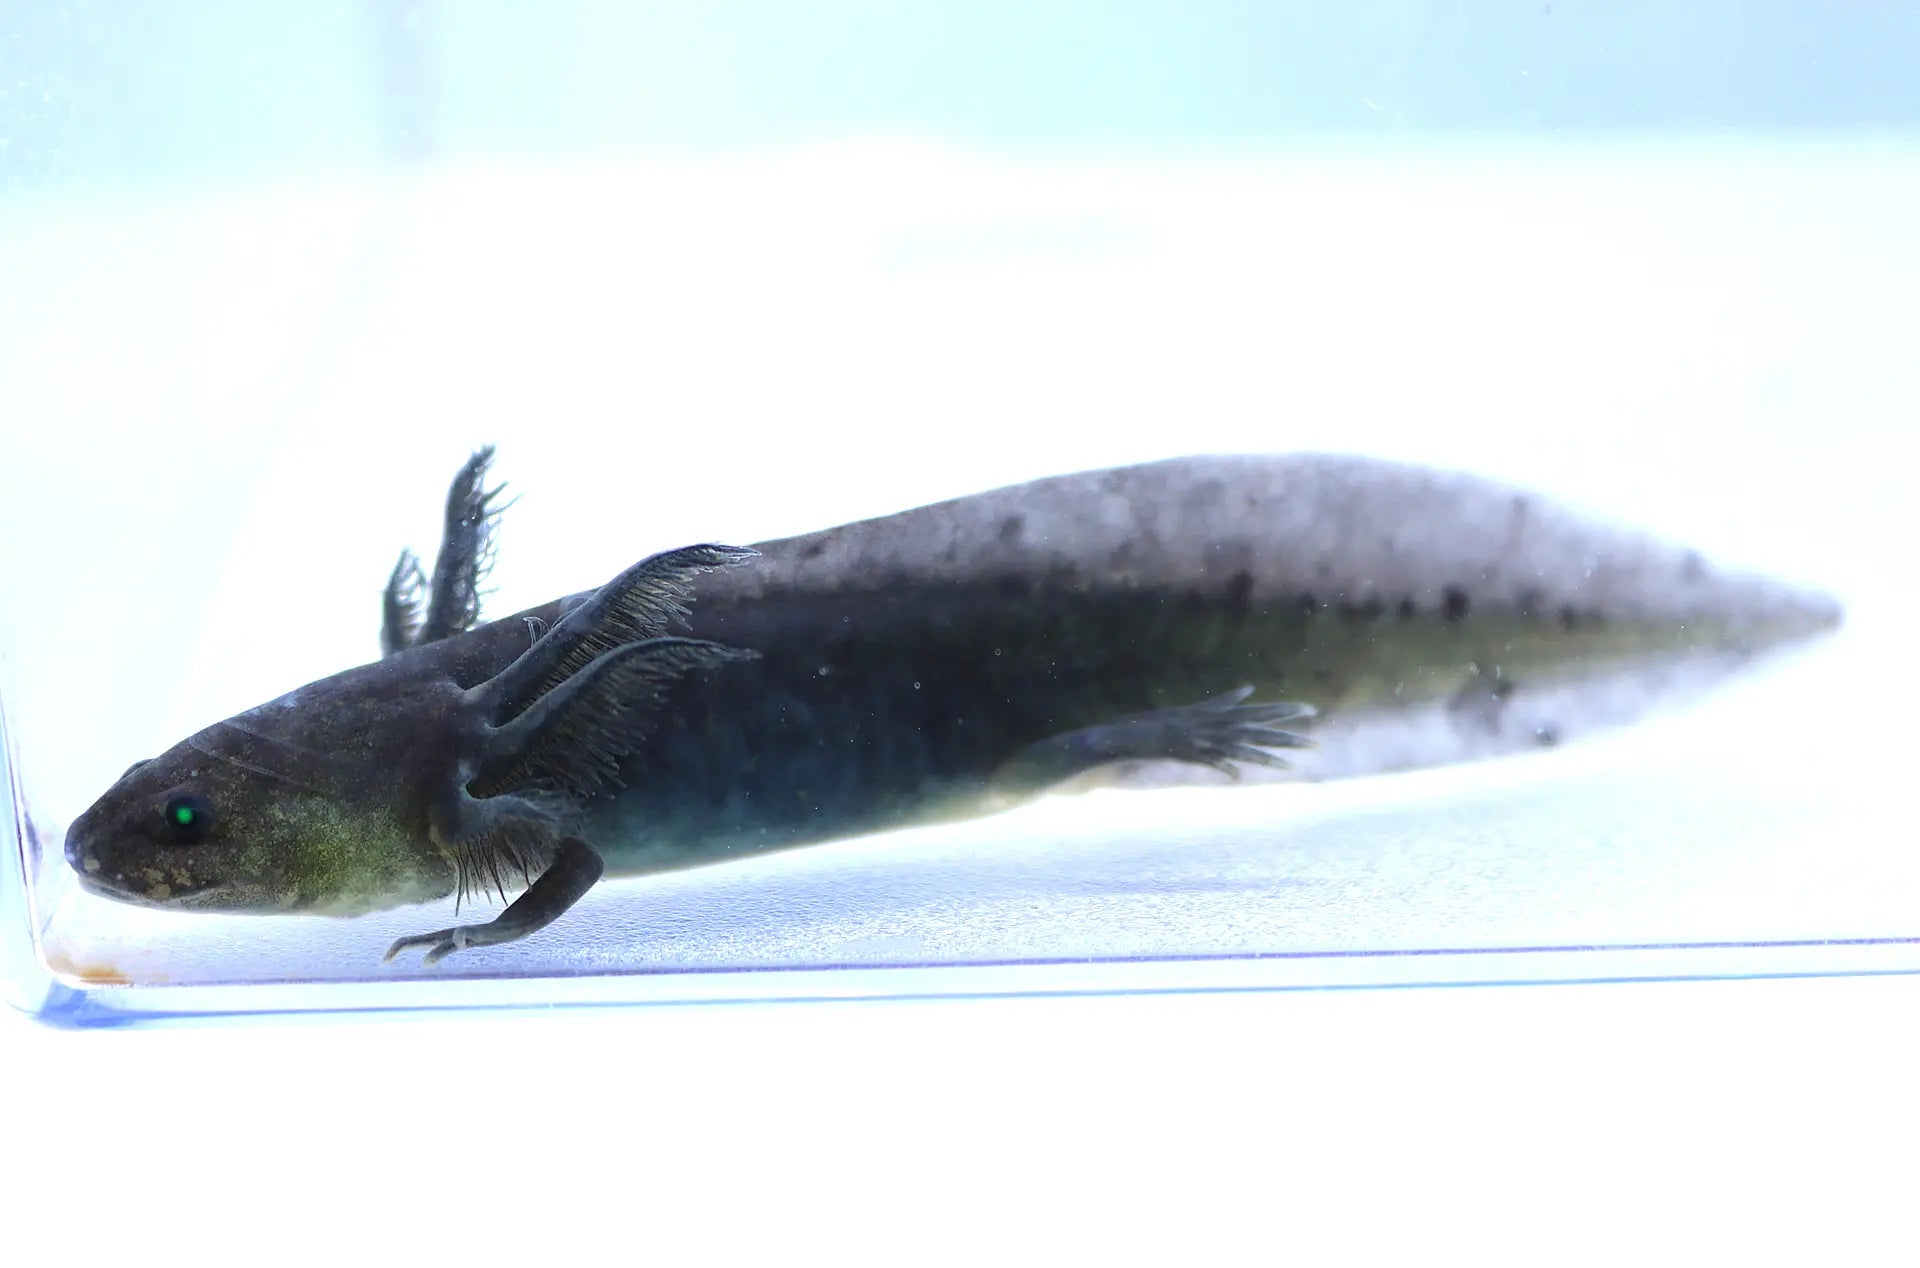 GFP Melanoid Axolotl